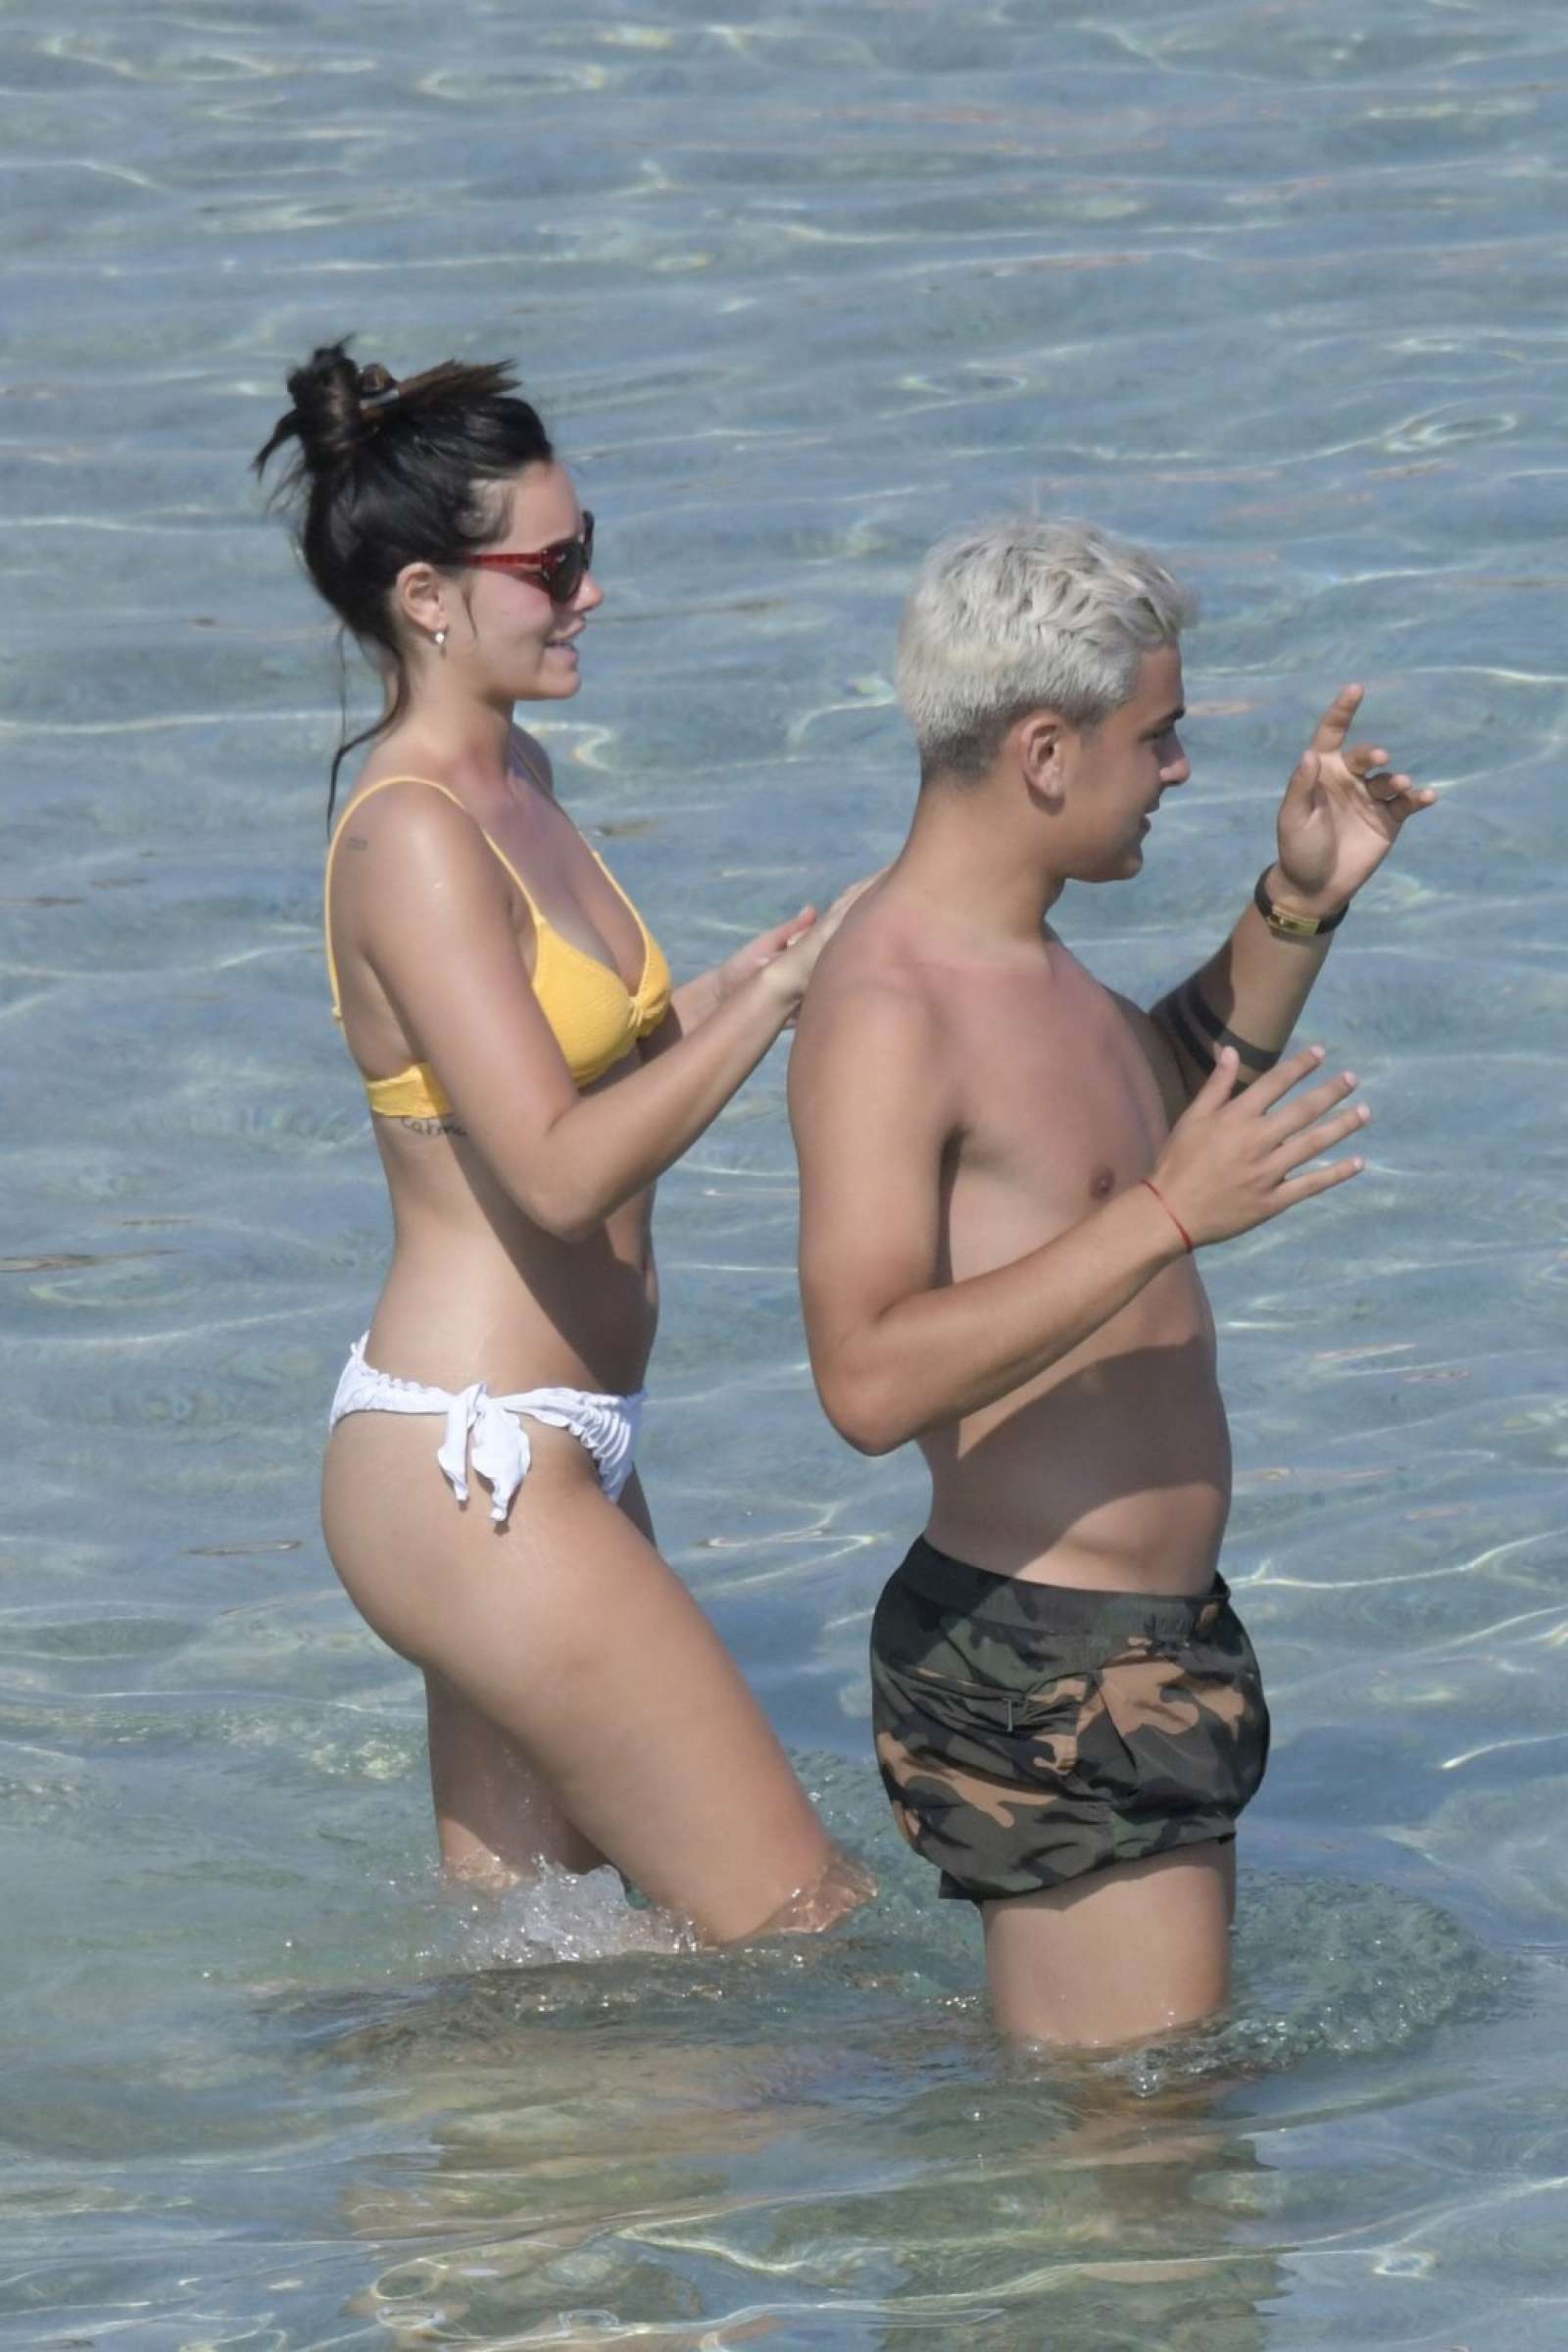 Oriana Sabatini in Bikini at the beach in Mykonos July 28, 2018 78